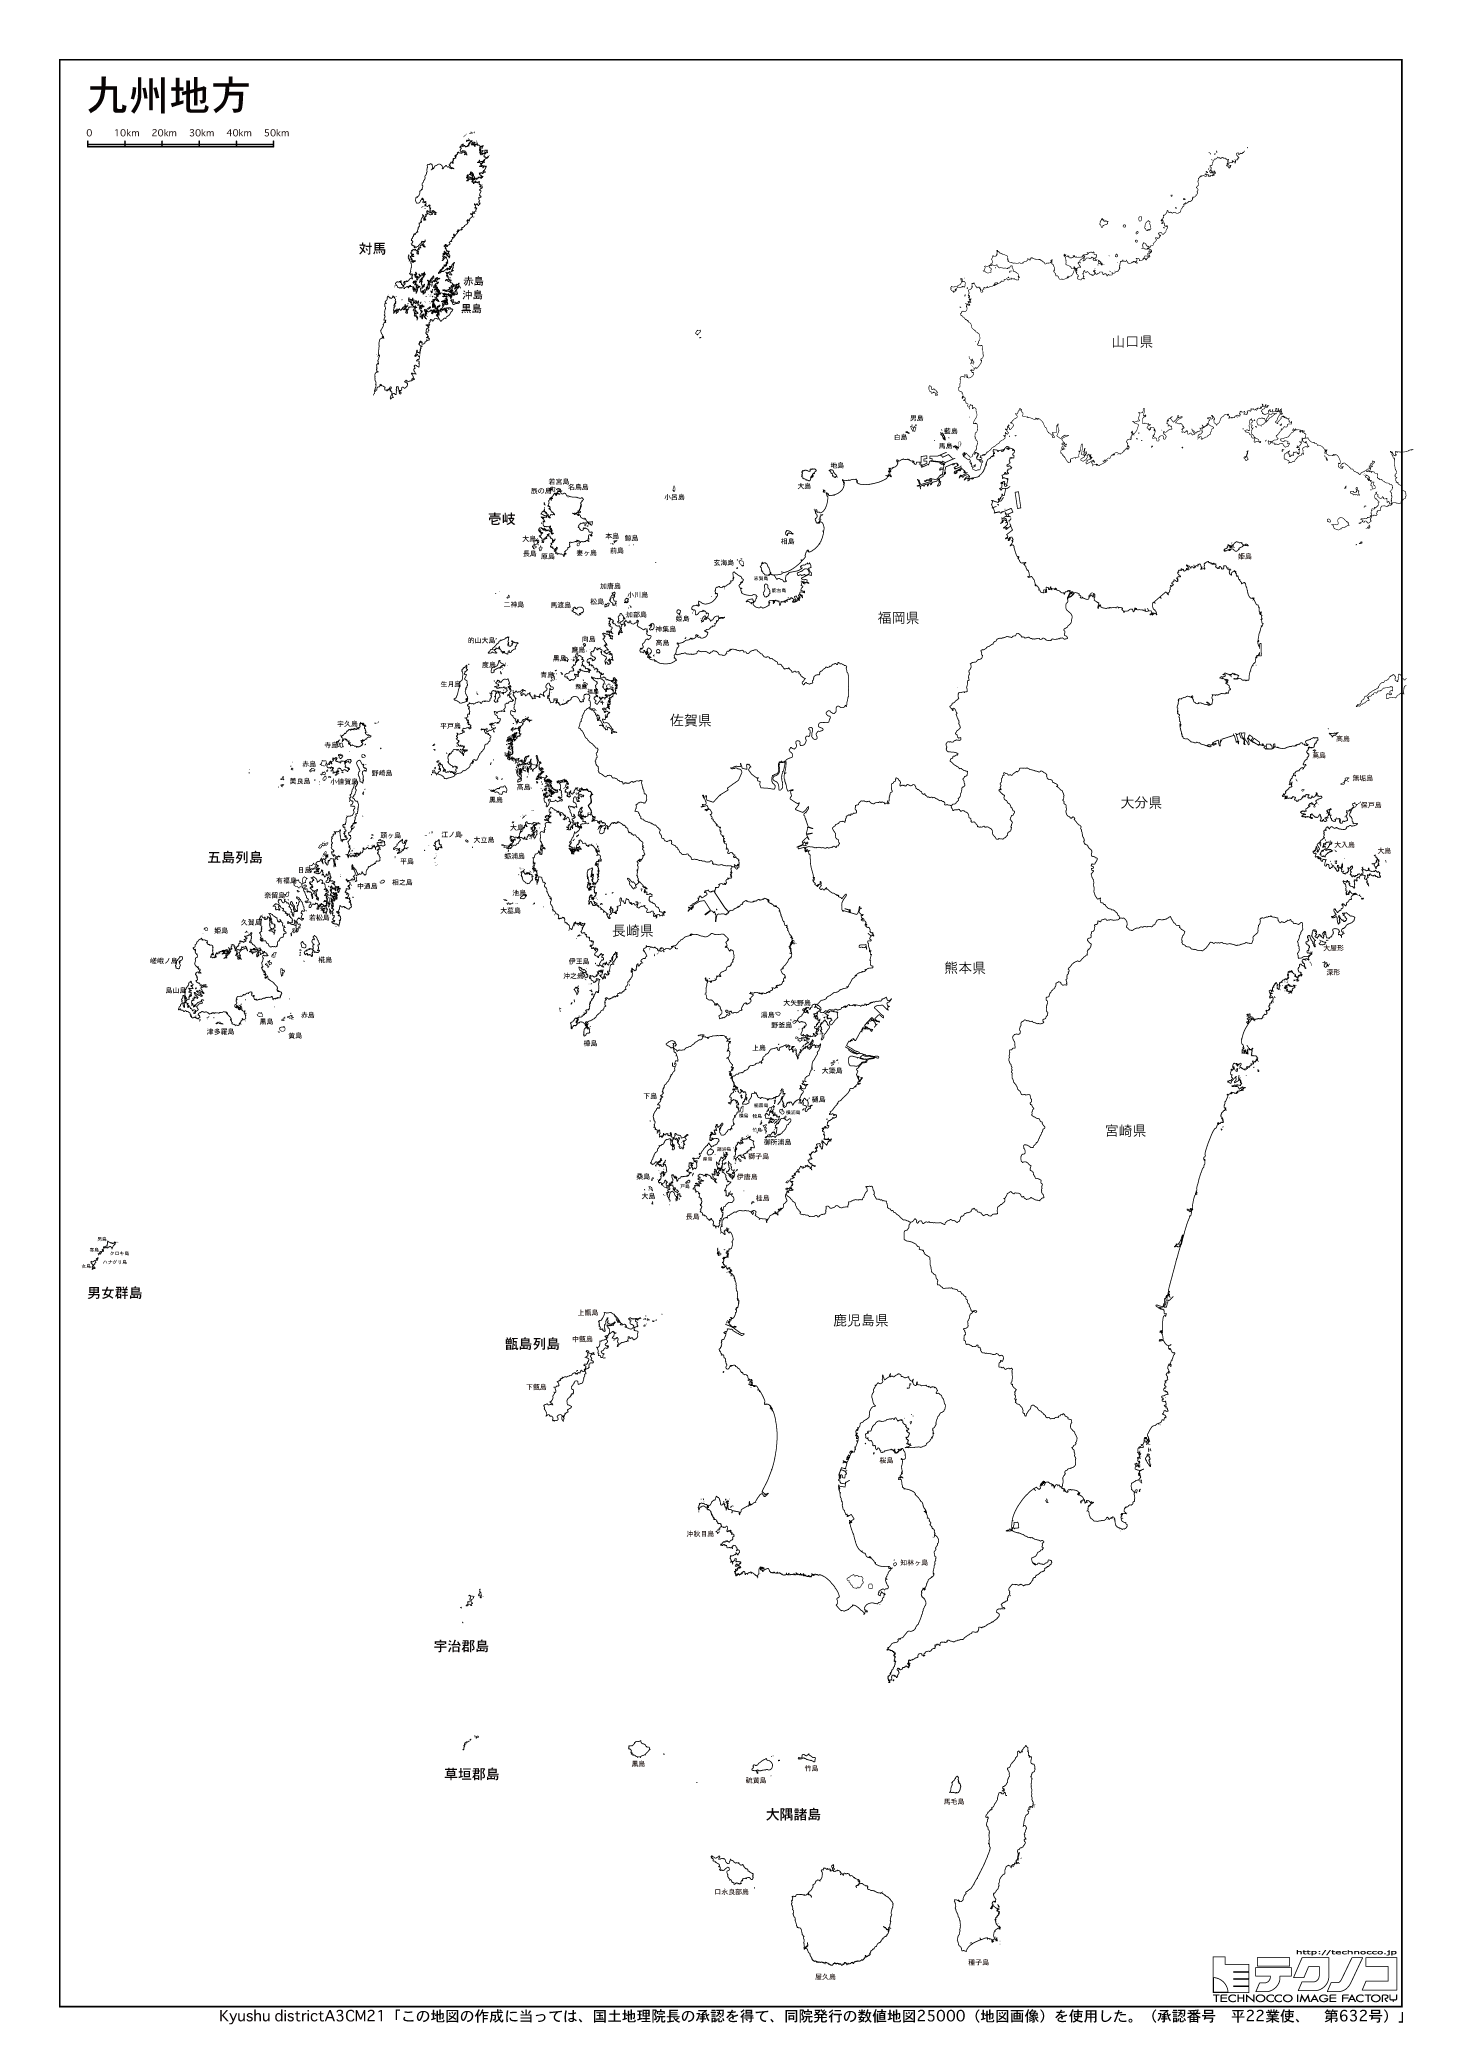 フリー 九州 沖縄 地図 シモネタ